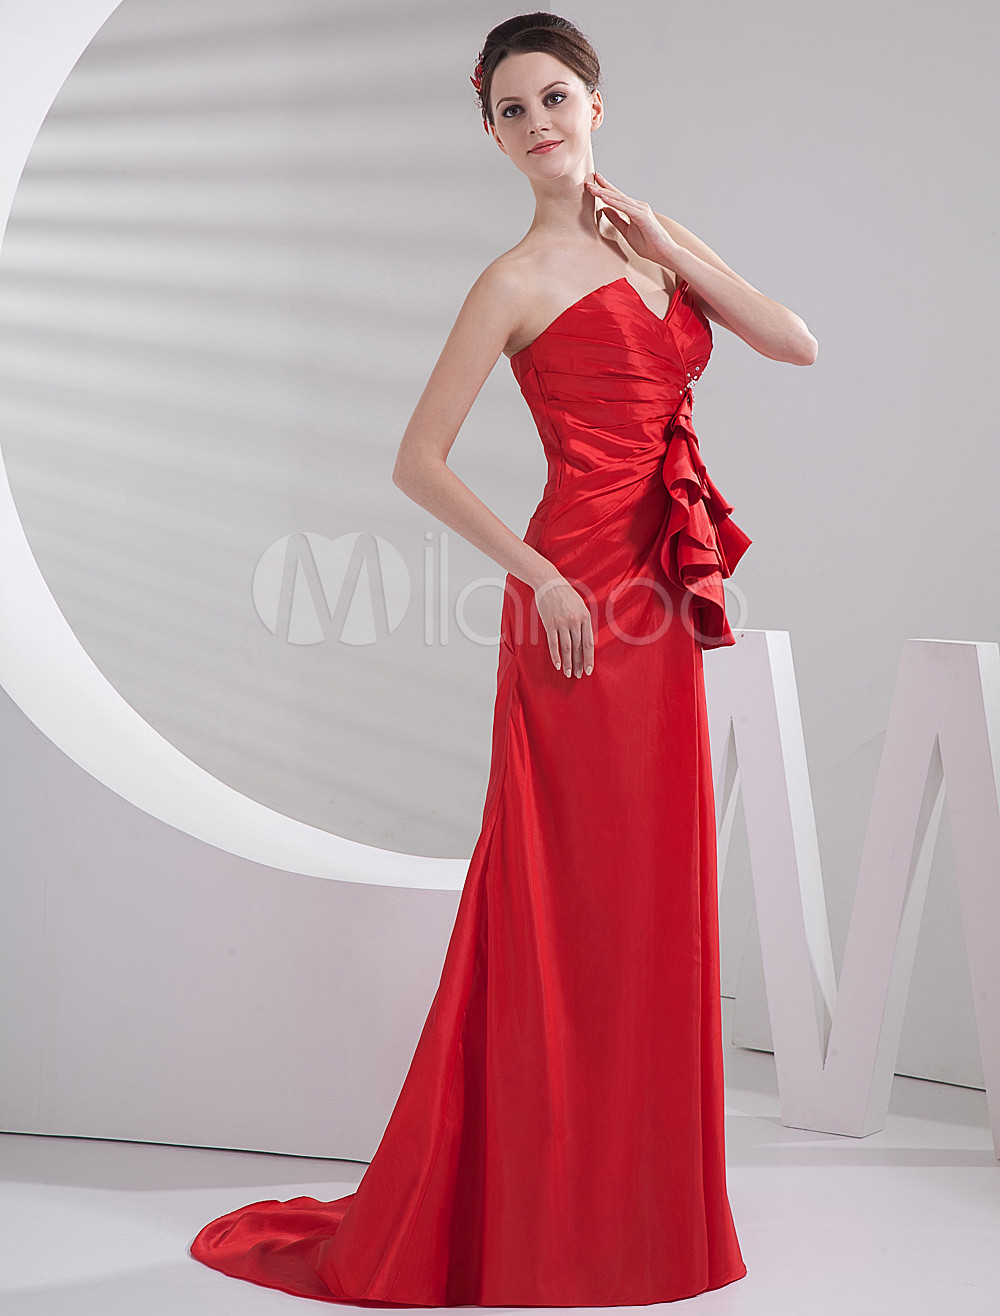 Gorgeous Red Taffeta Strapless A-line Prom Dress - Milanoo.com